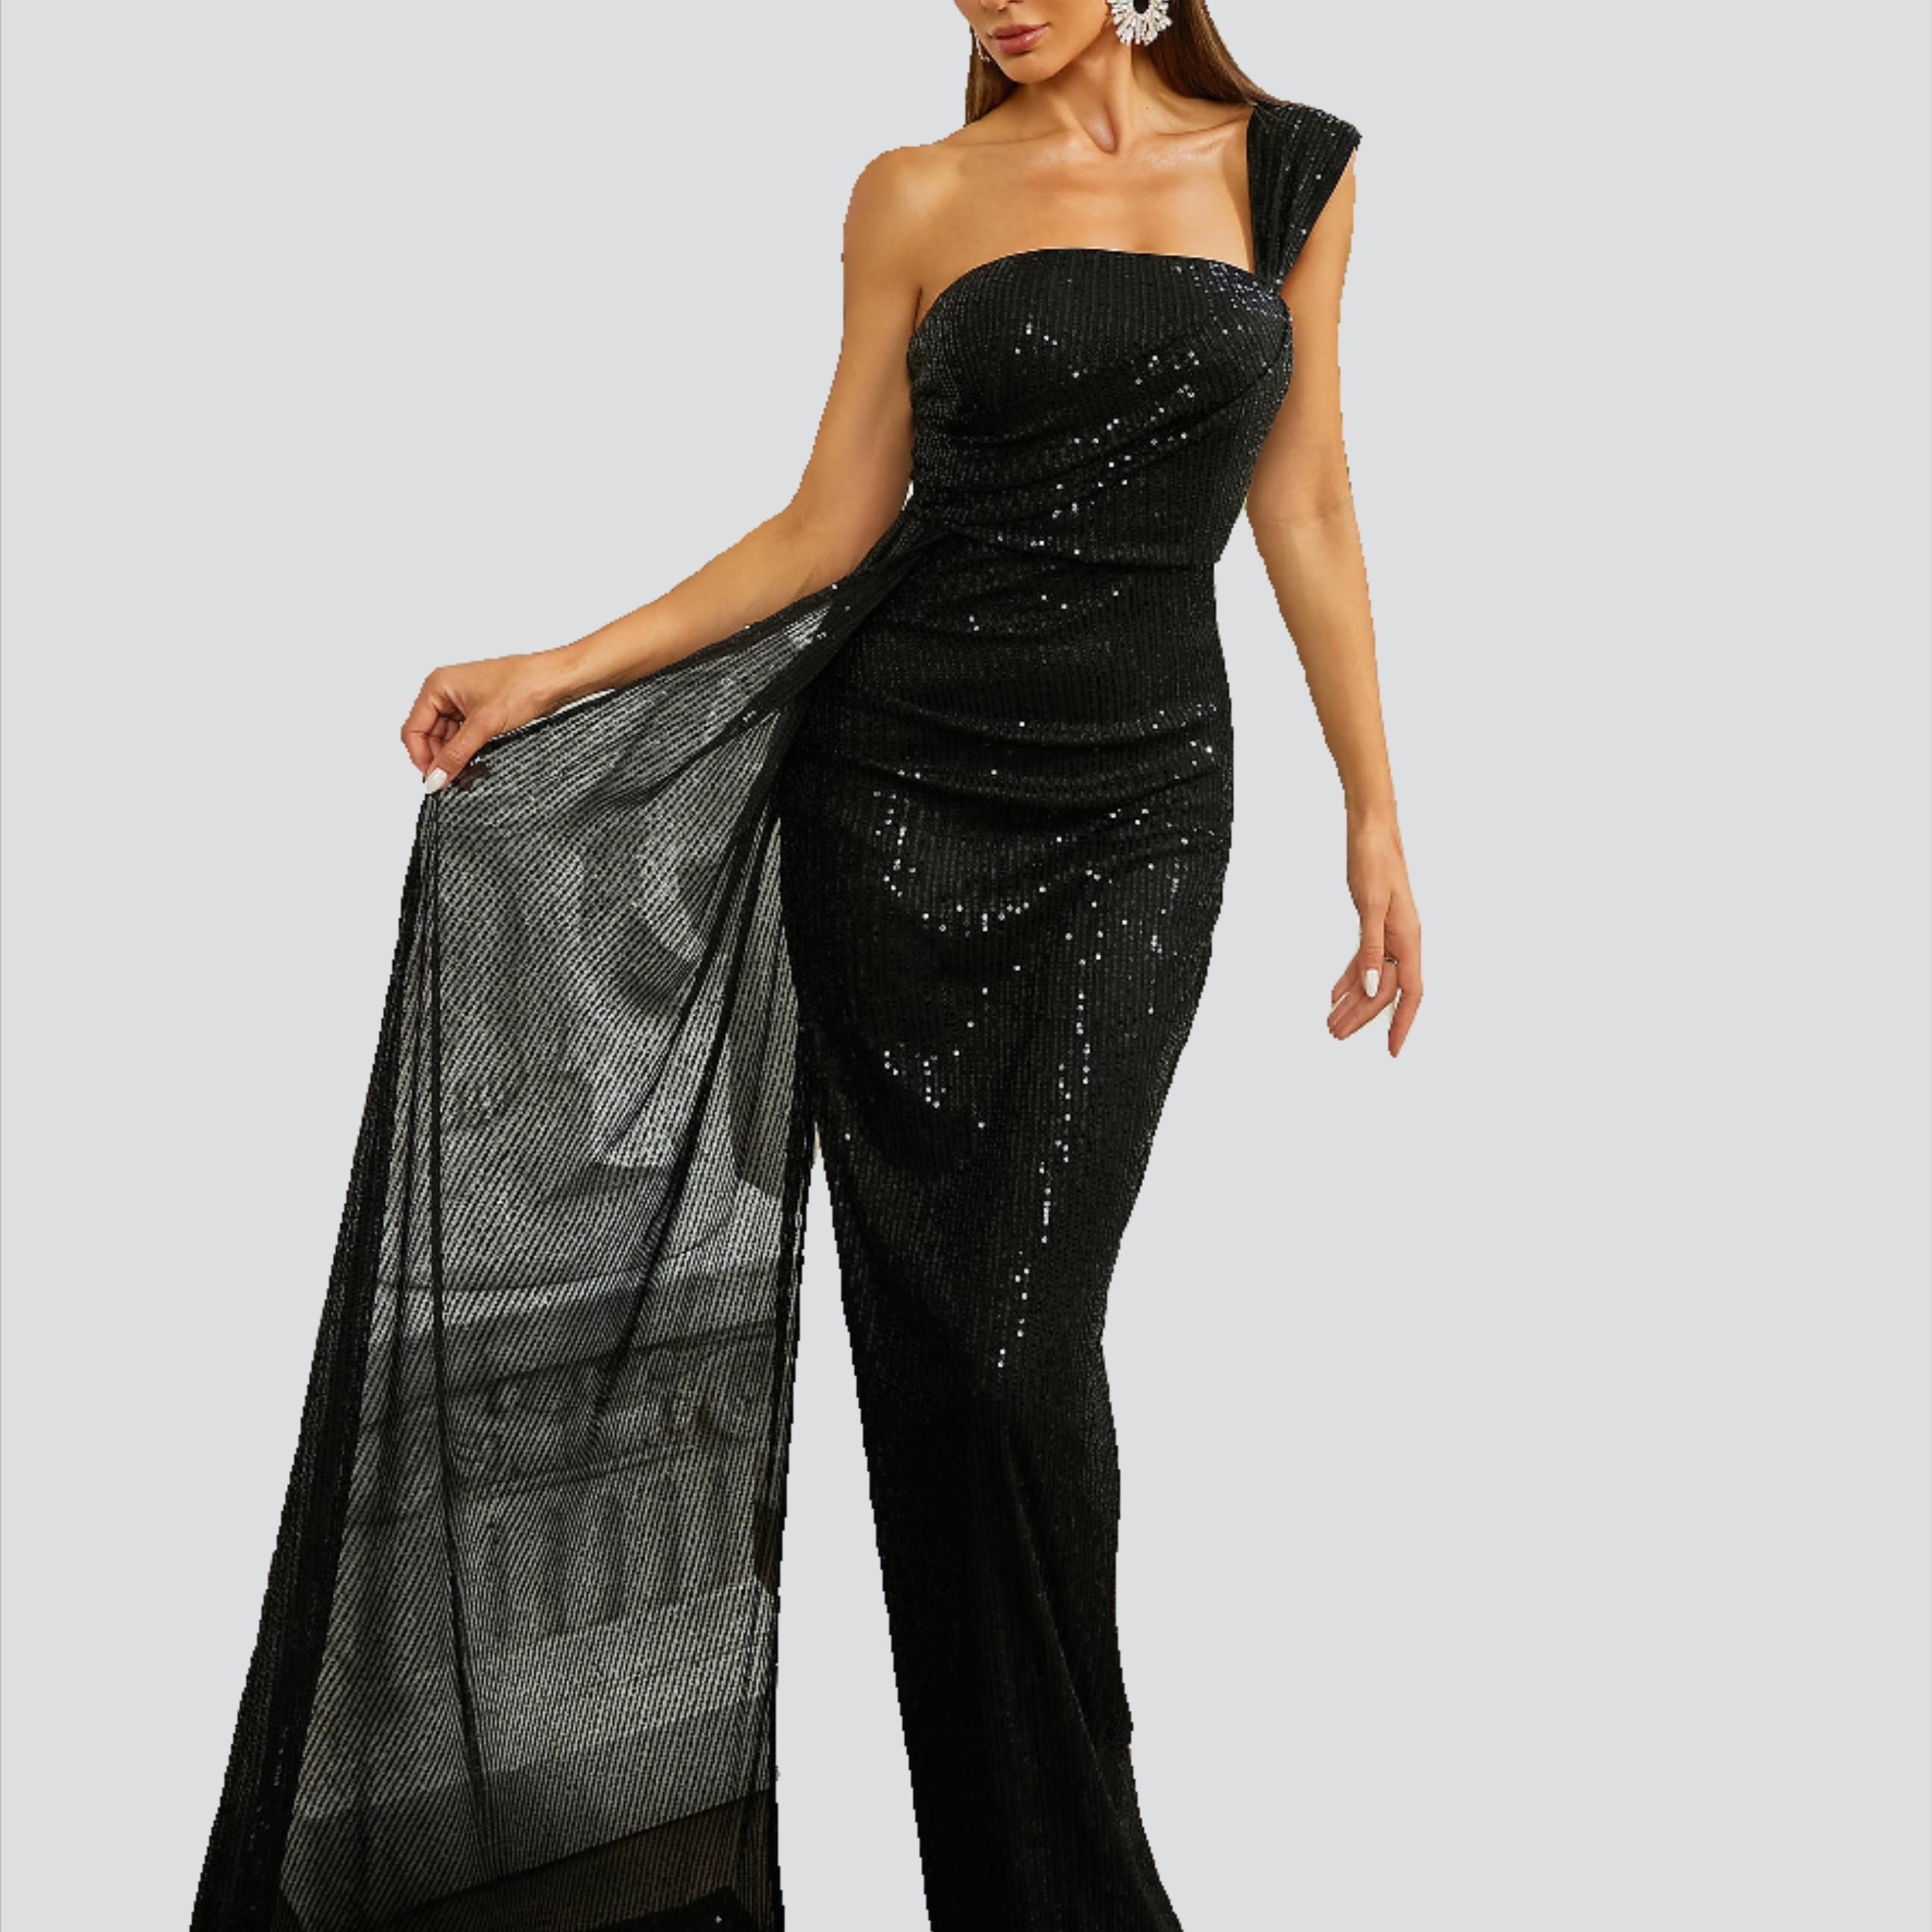 One Shoulder Split Sleeveless Sequin Black Dress